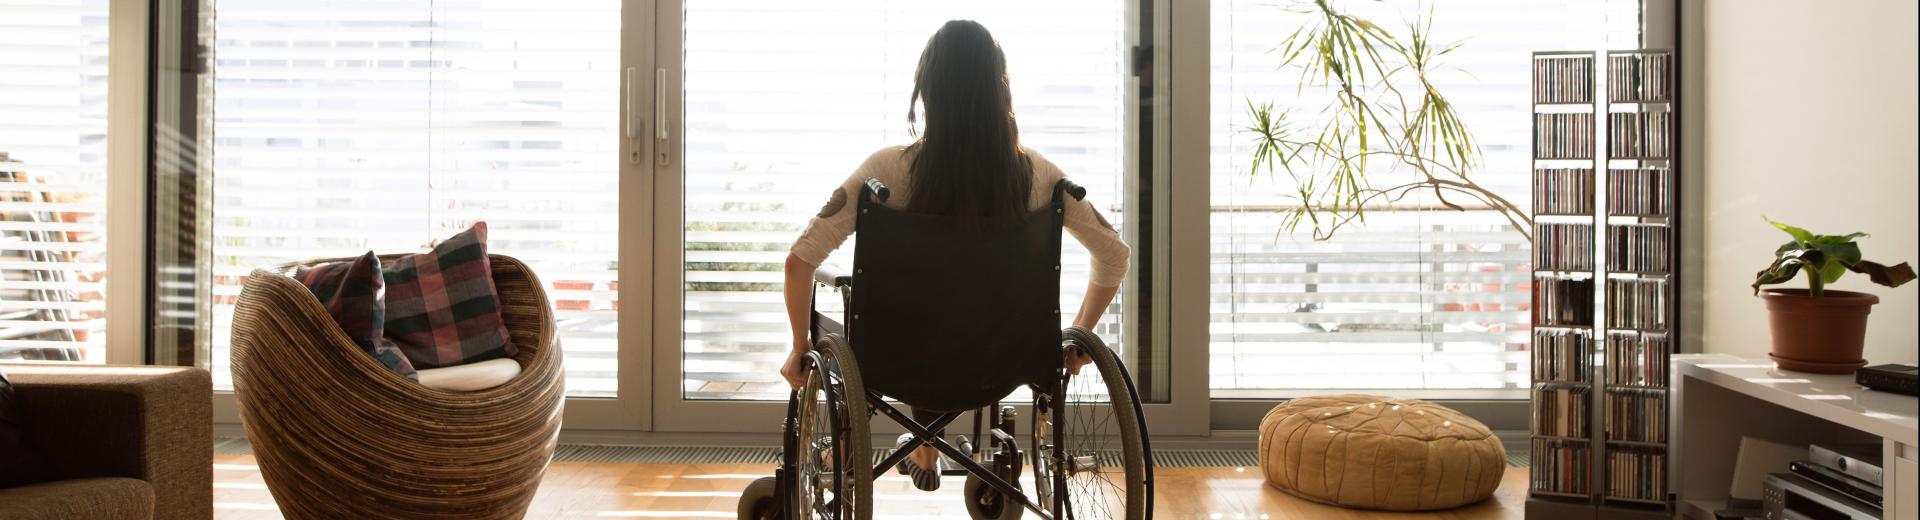 Finestre e porte per disabili. Accessibilità per tutti in casa Guide e consigli 